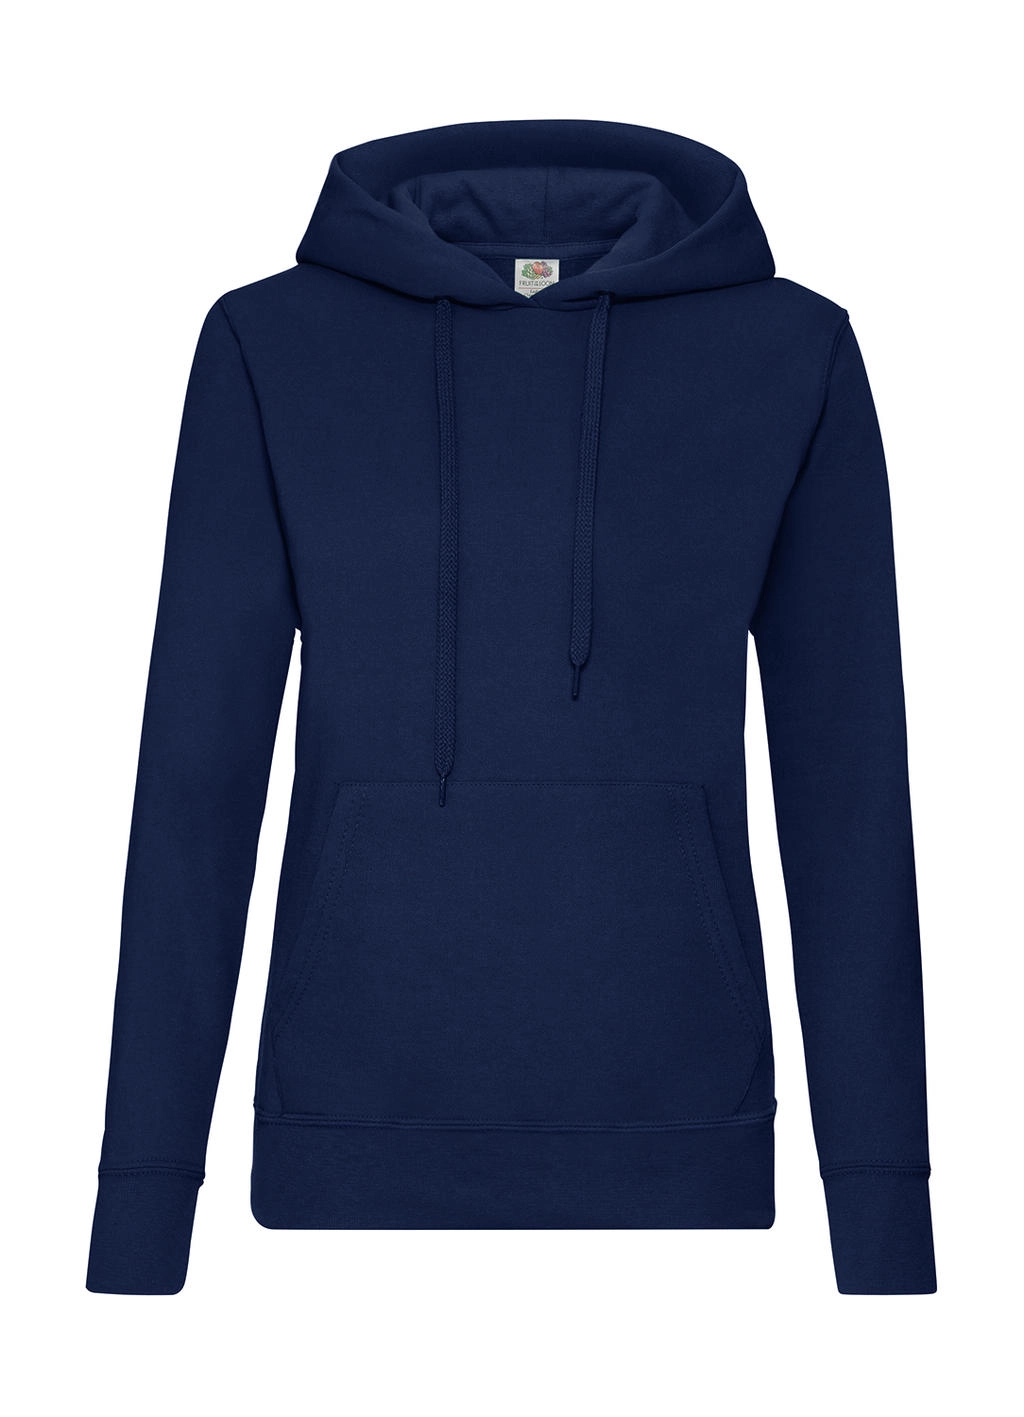 Ladies` Classic Hooded Sweat zum Besticken und Bedrucken in der Farbe Navy mit Ihren Logo, Schriftzug oder Motiv.